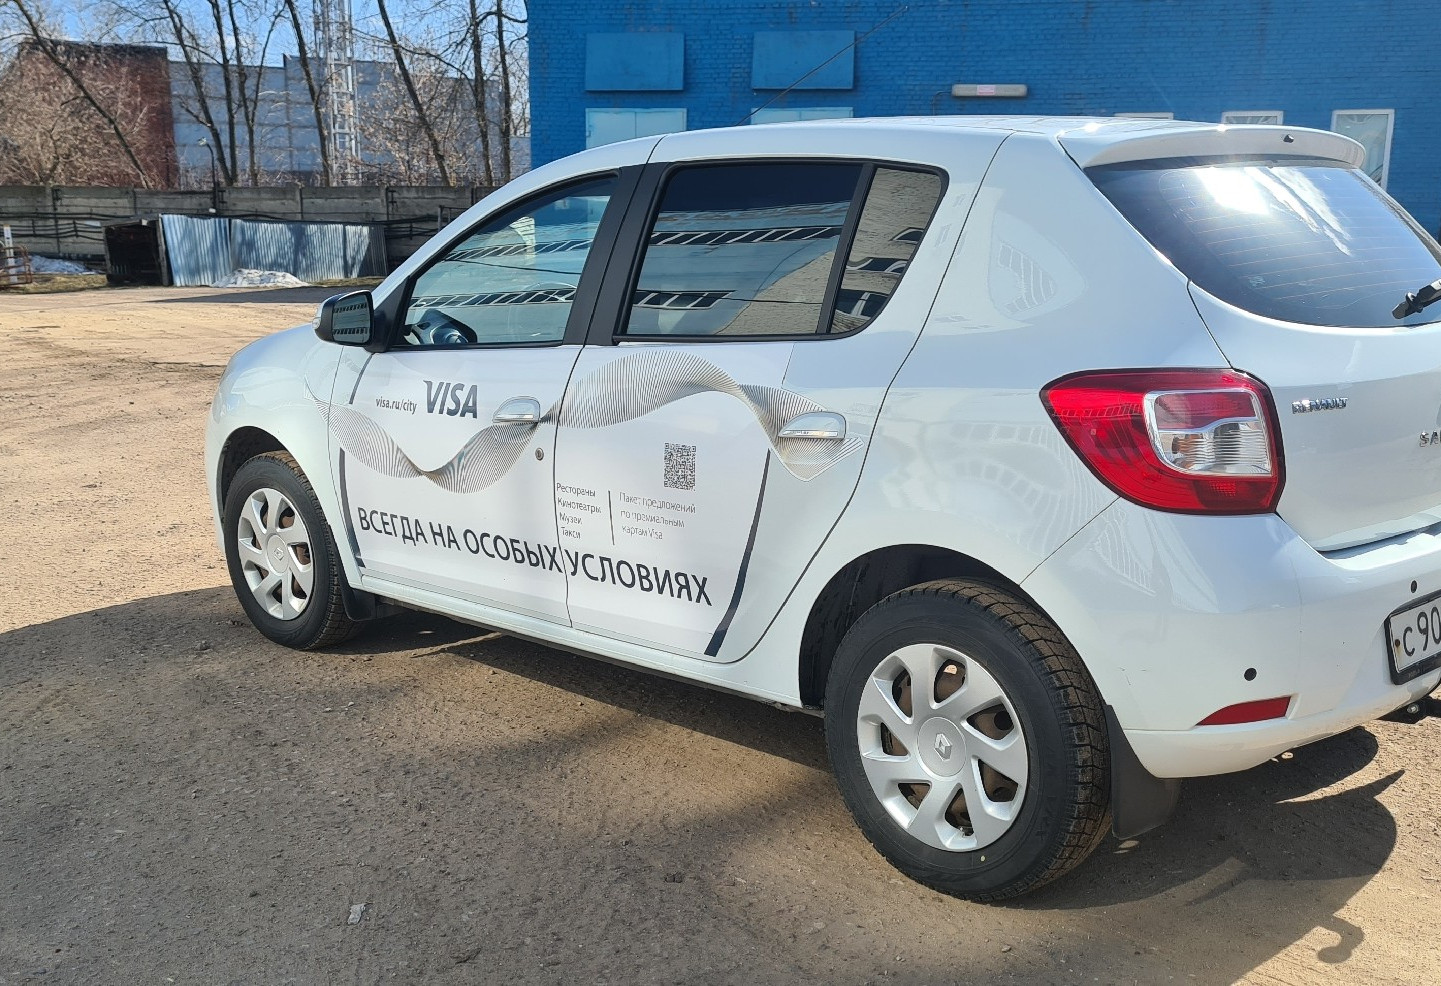 Аренда renault sandero эконом класса 2014 года в городе Москва от 1700 руб./сутки, передний привод, двигатель: бензин, объем 1.6 литров, ОСАГО (Впишу в полис), без водителя, недорого - RentRide